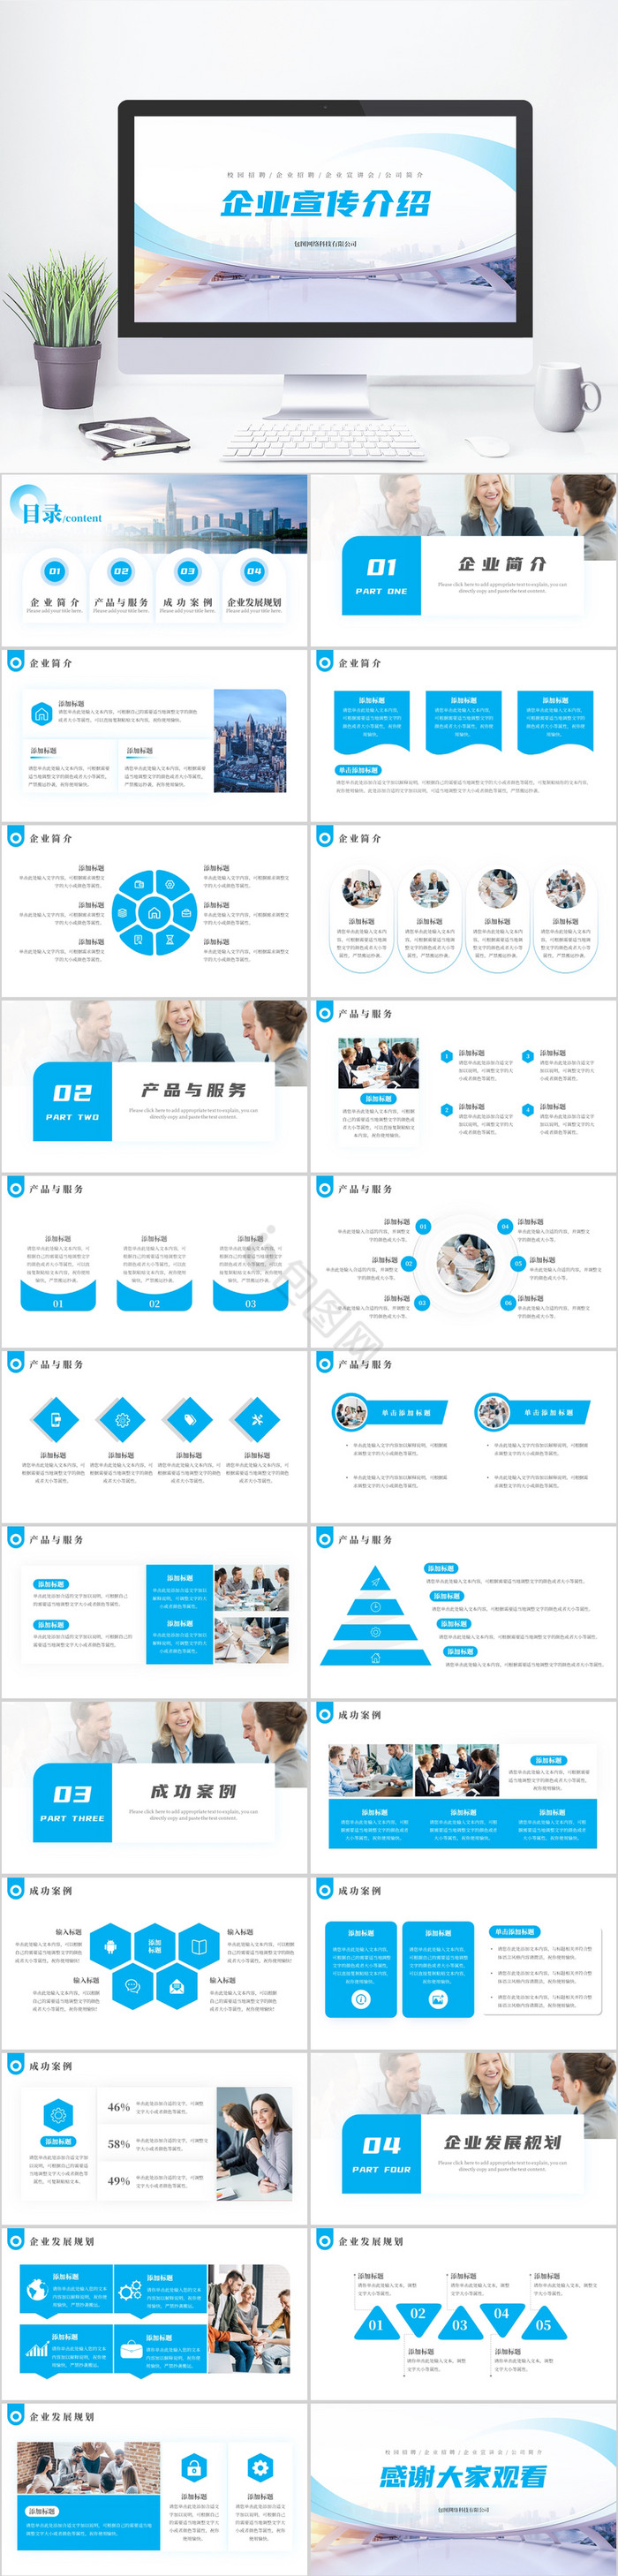 蓝色企业宣传公司介绍PPT模板